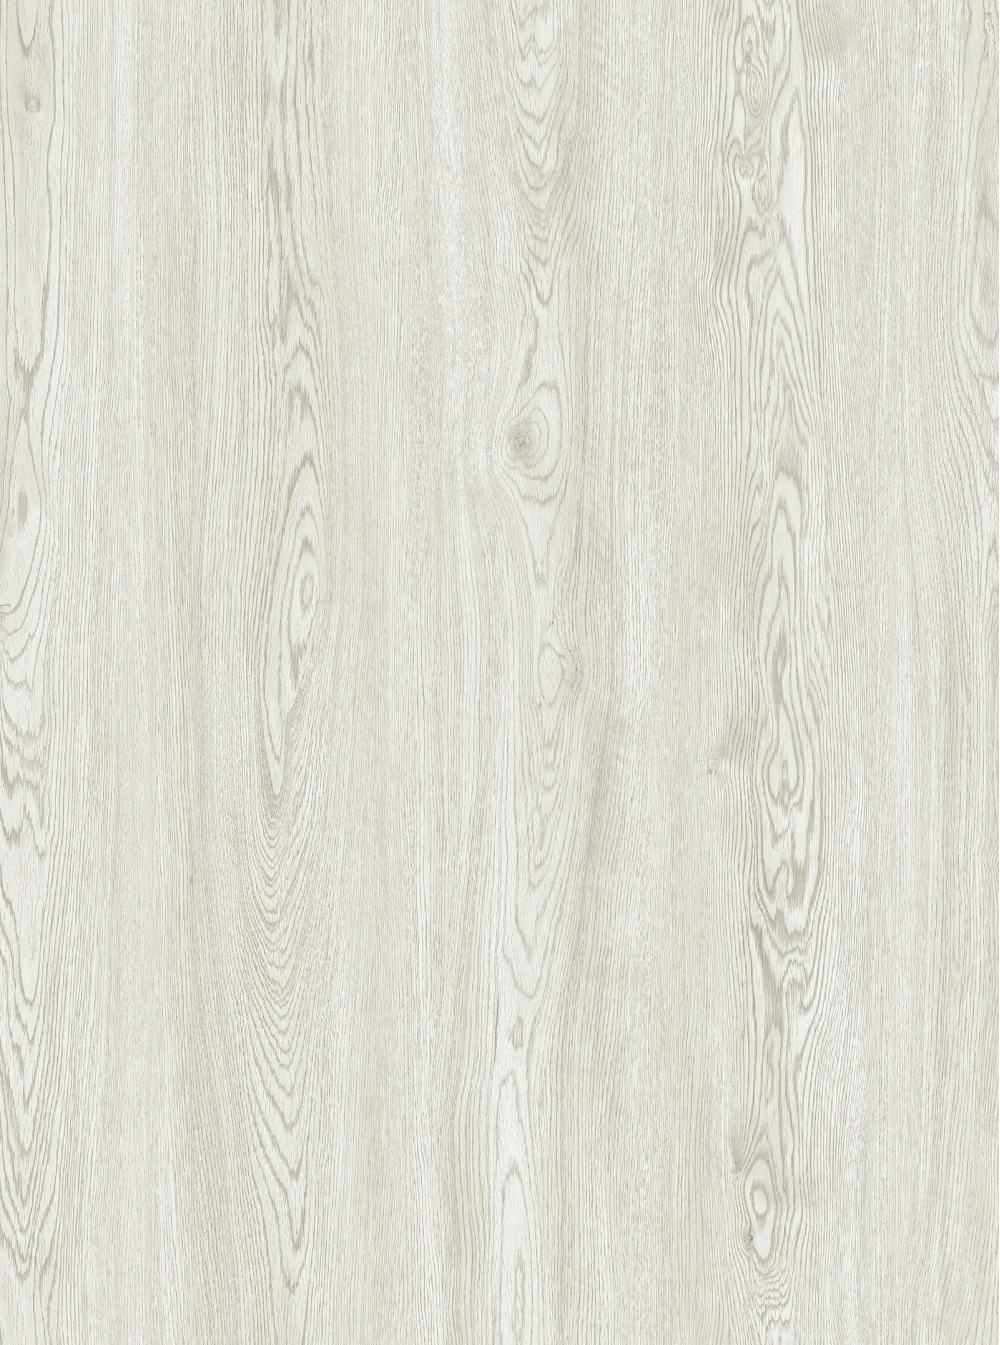 Pisos de clic en el aspecto de madera anti-scratch